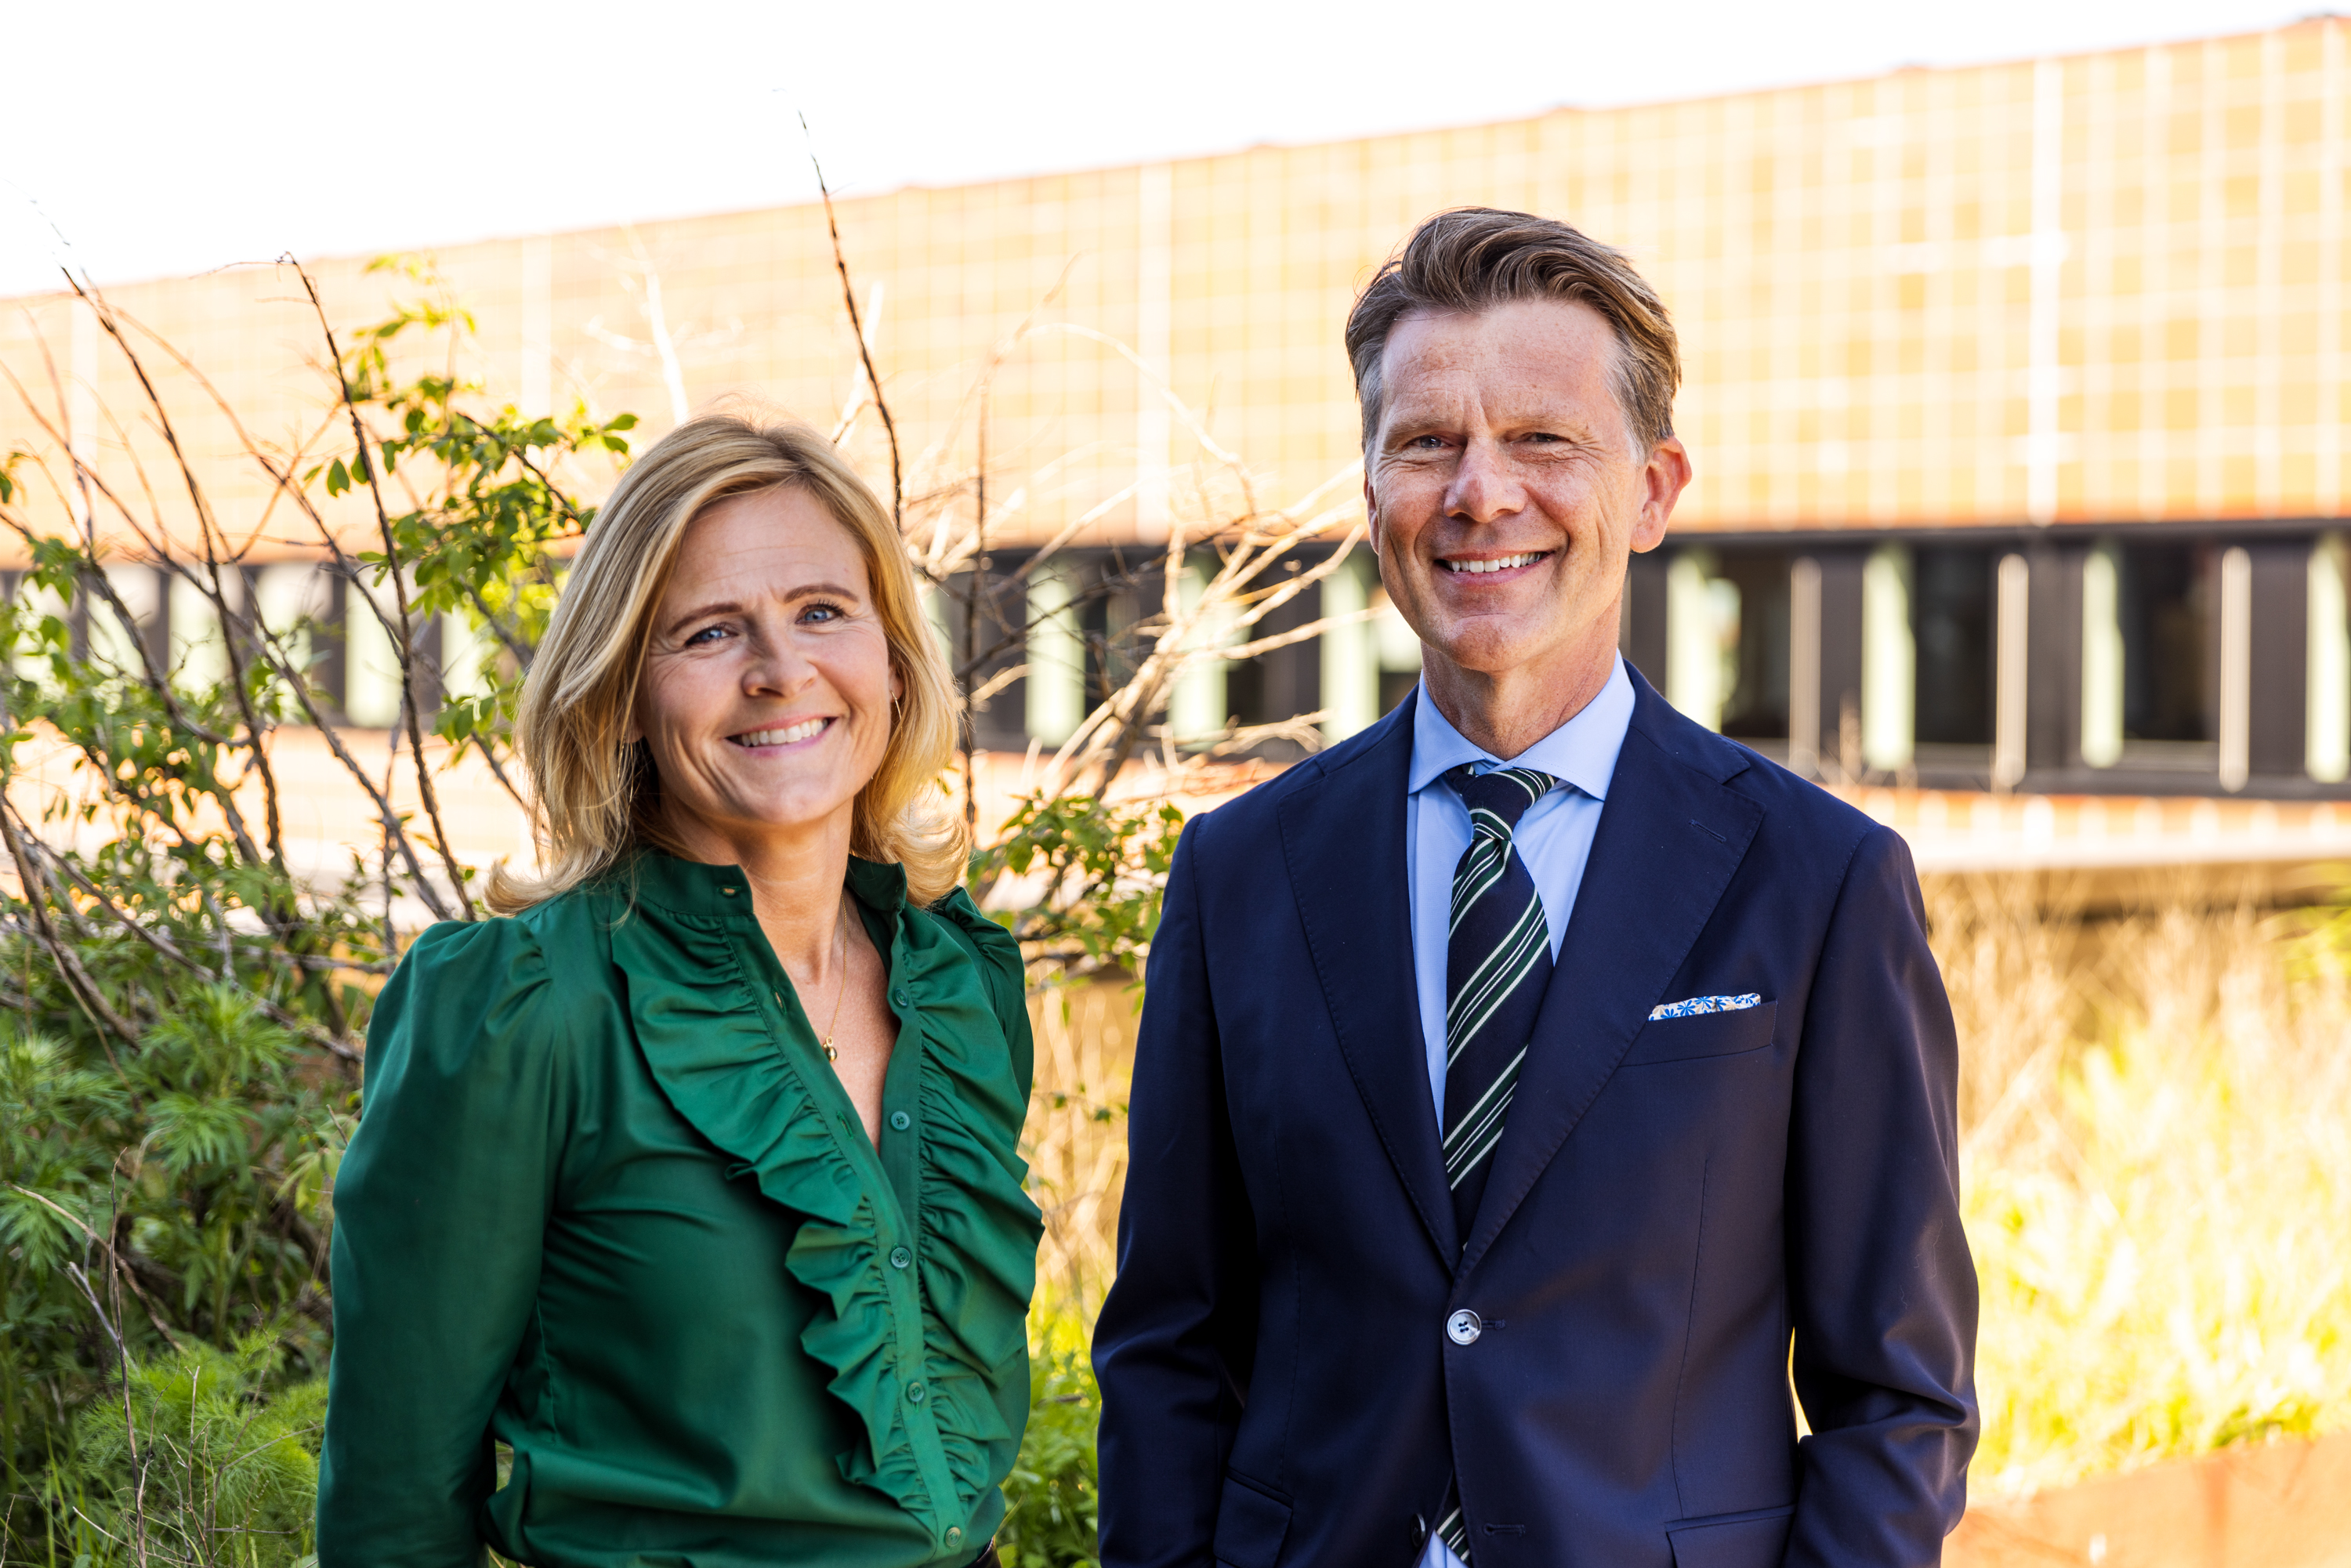 PFA's koncerndirektør, Camilla Holm, sammen med Anders Hestbech, adm. direktør i Købstædernes Forsikring.